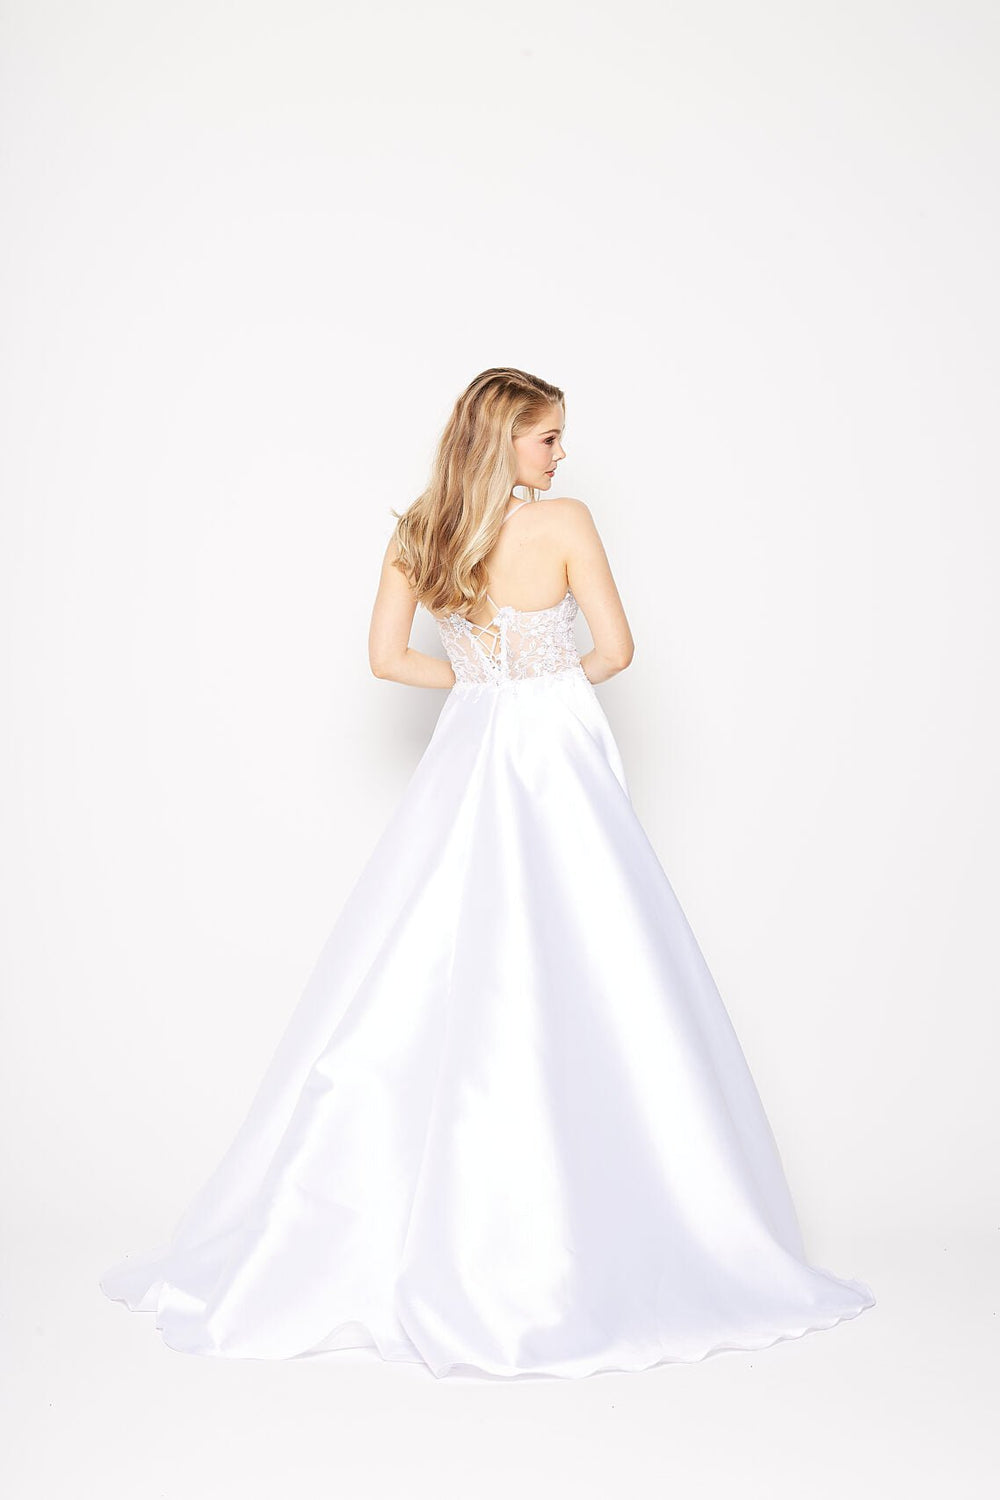 Jacinta Dress in White by Tania Olsen PO2355 - ElissaJay Boutique